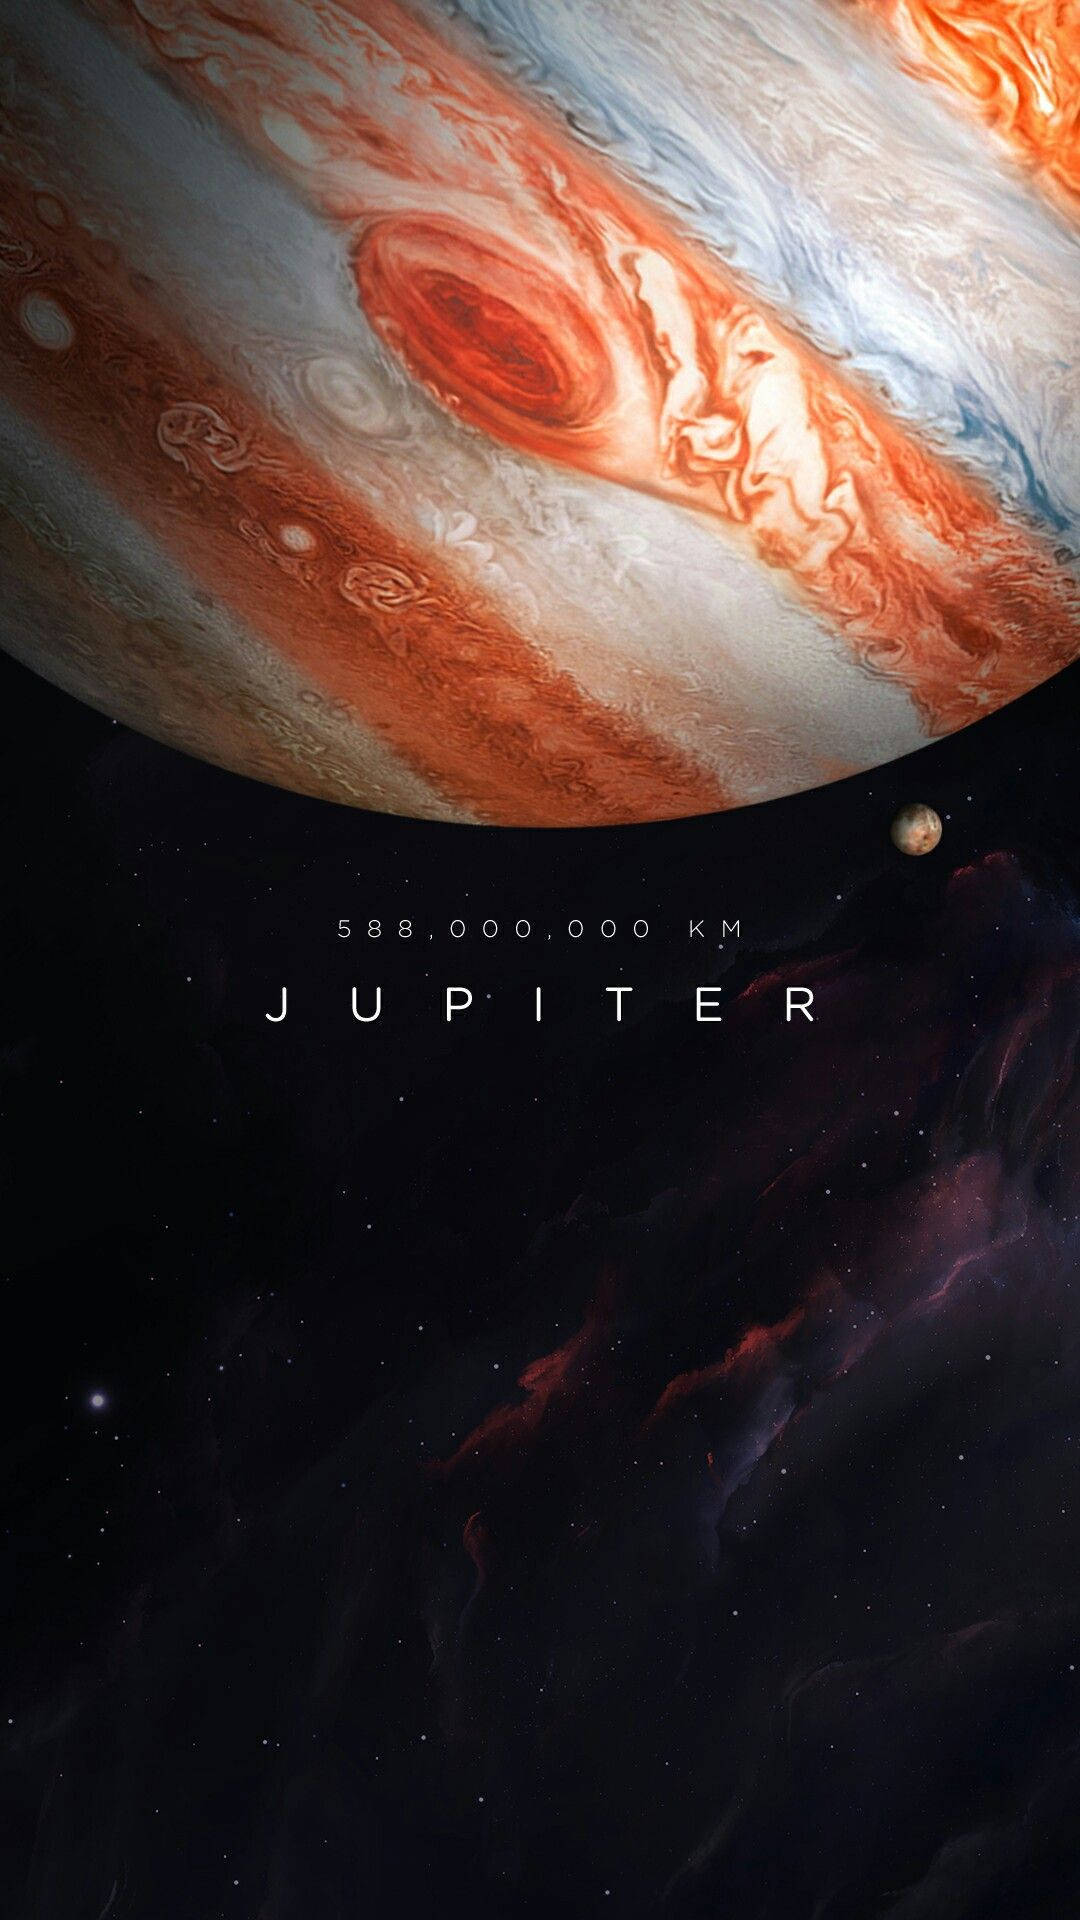 Jupiter Informational Poster Background